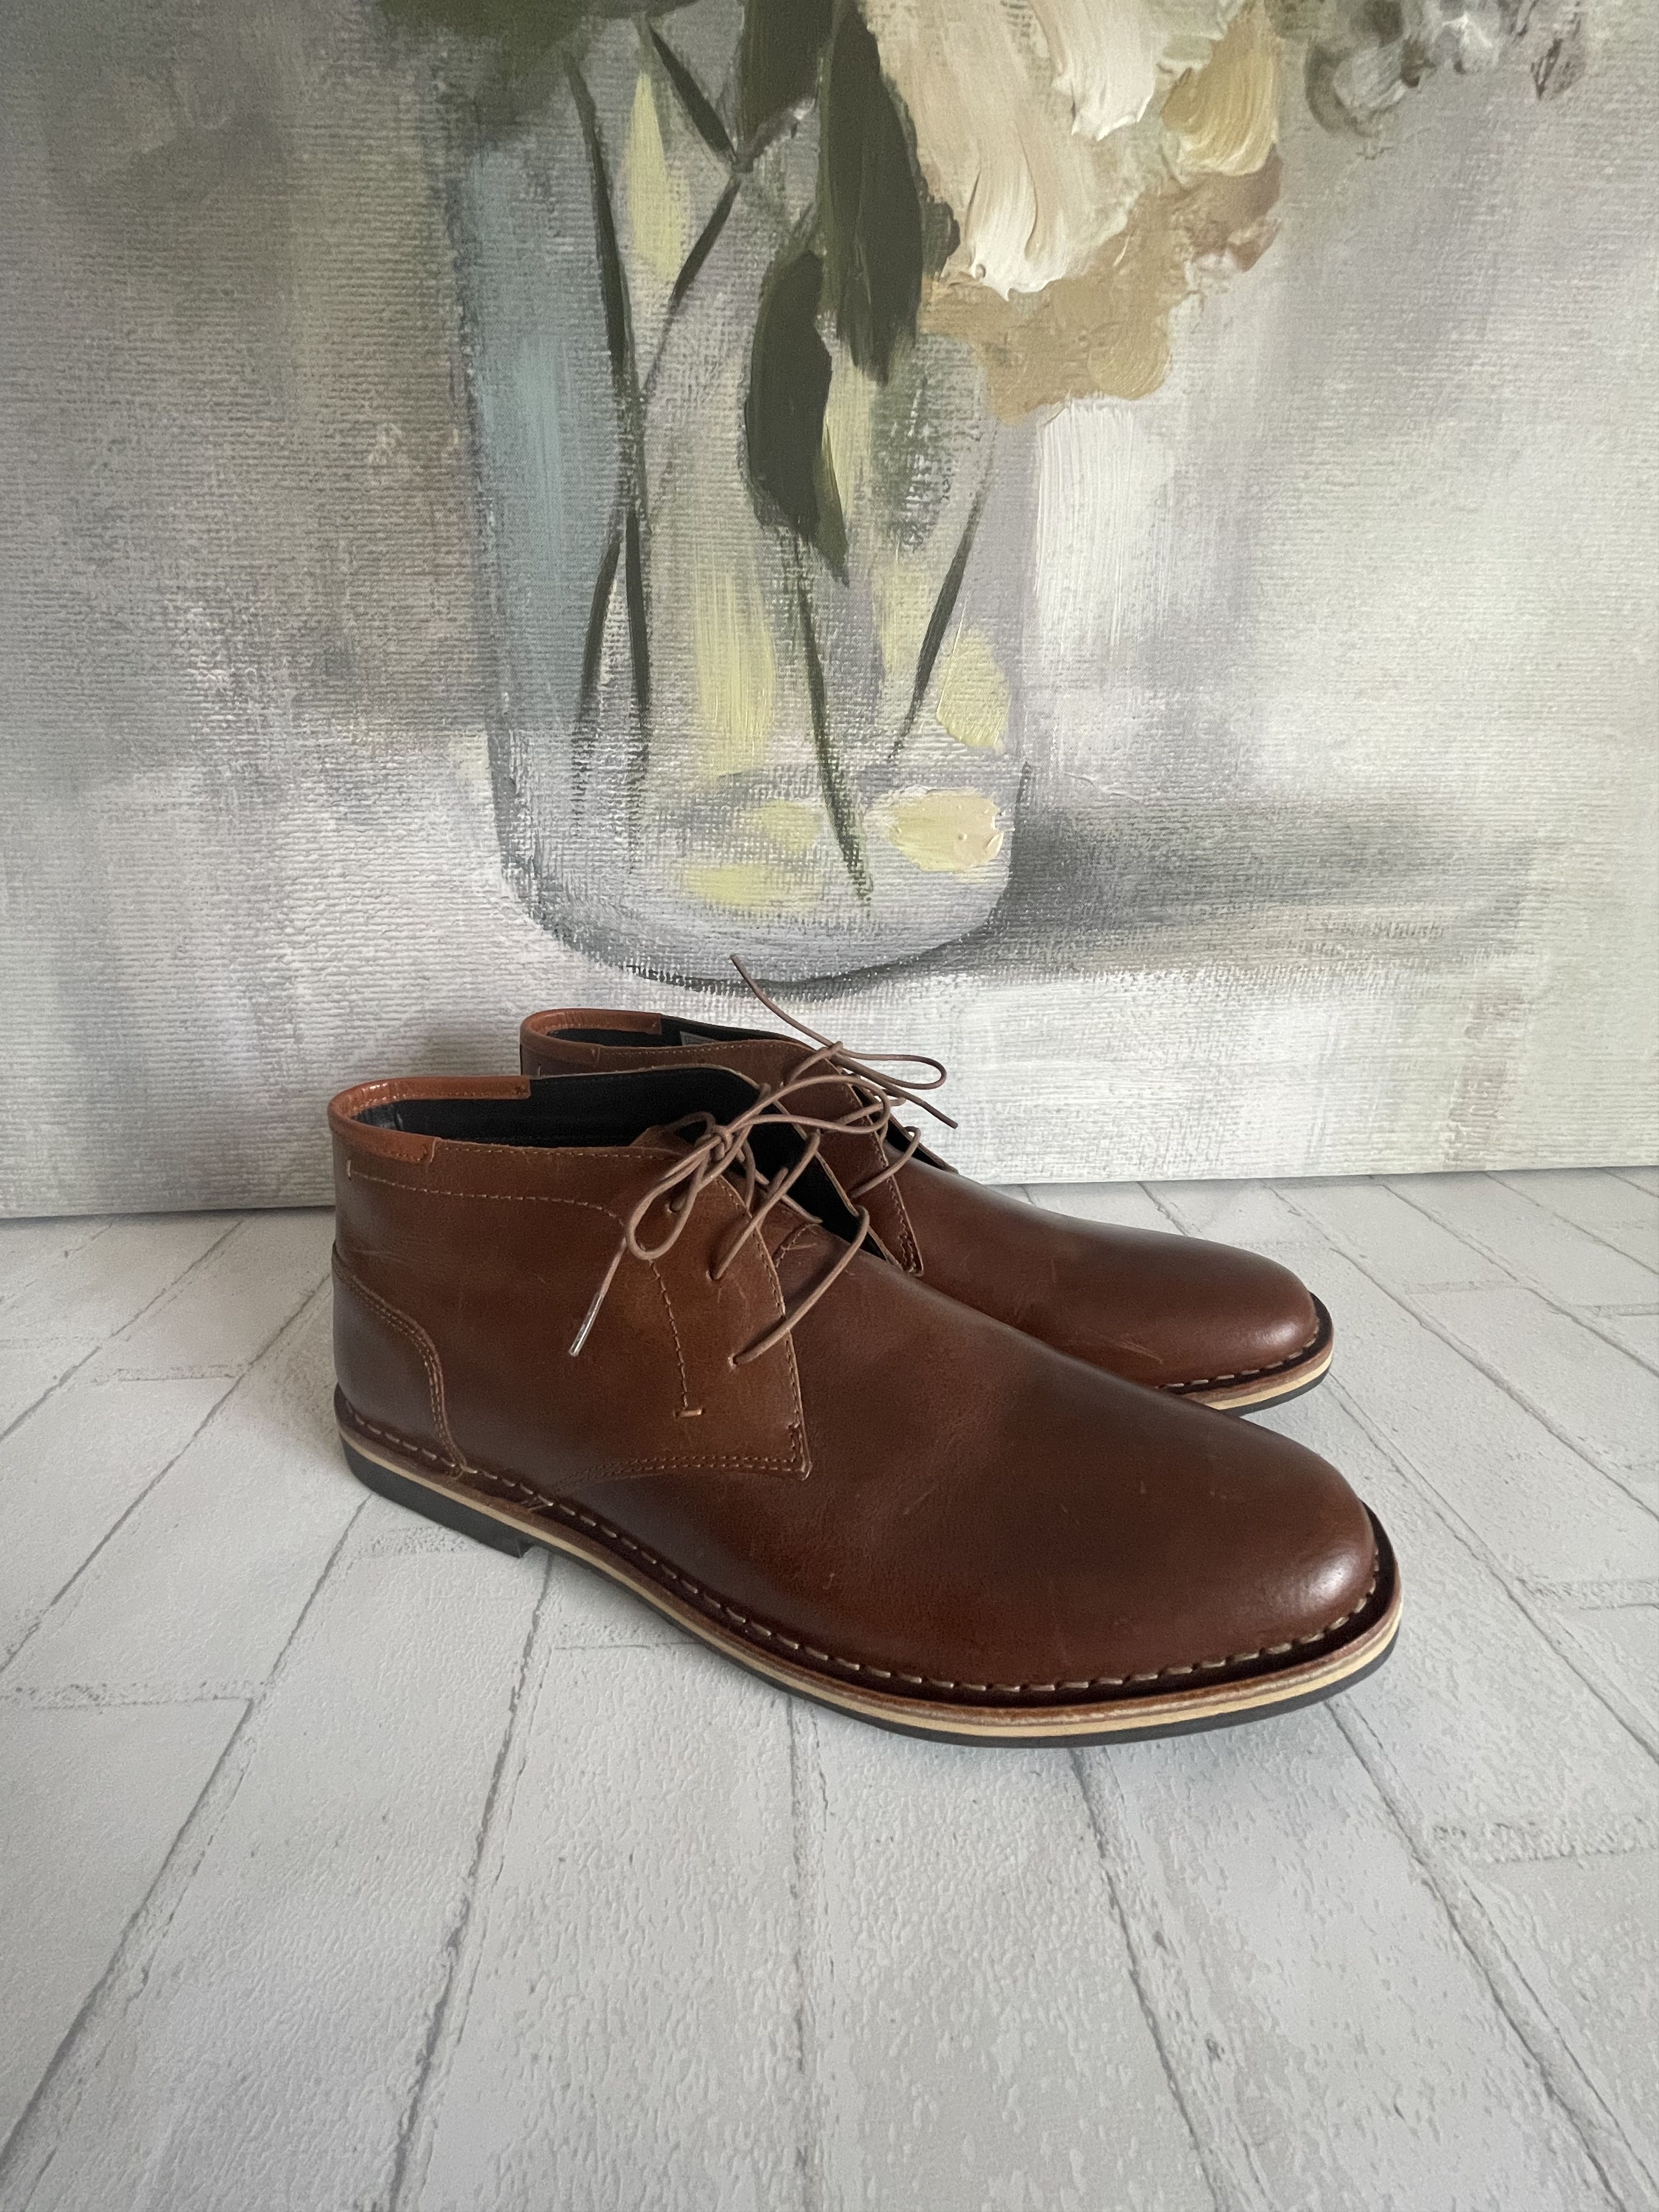 Steve Madden Steve Madden Harken Chukka Boots Cognac Leather Size 11.5 ...